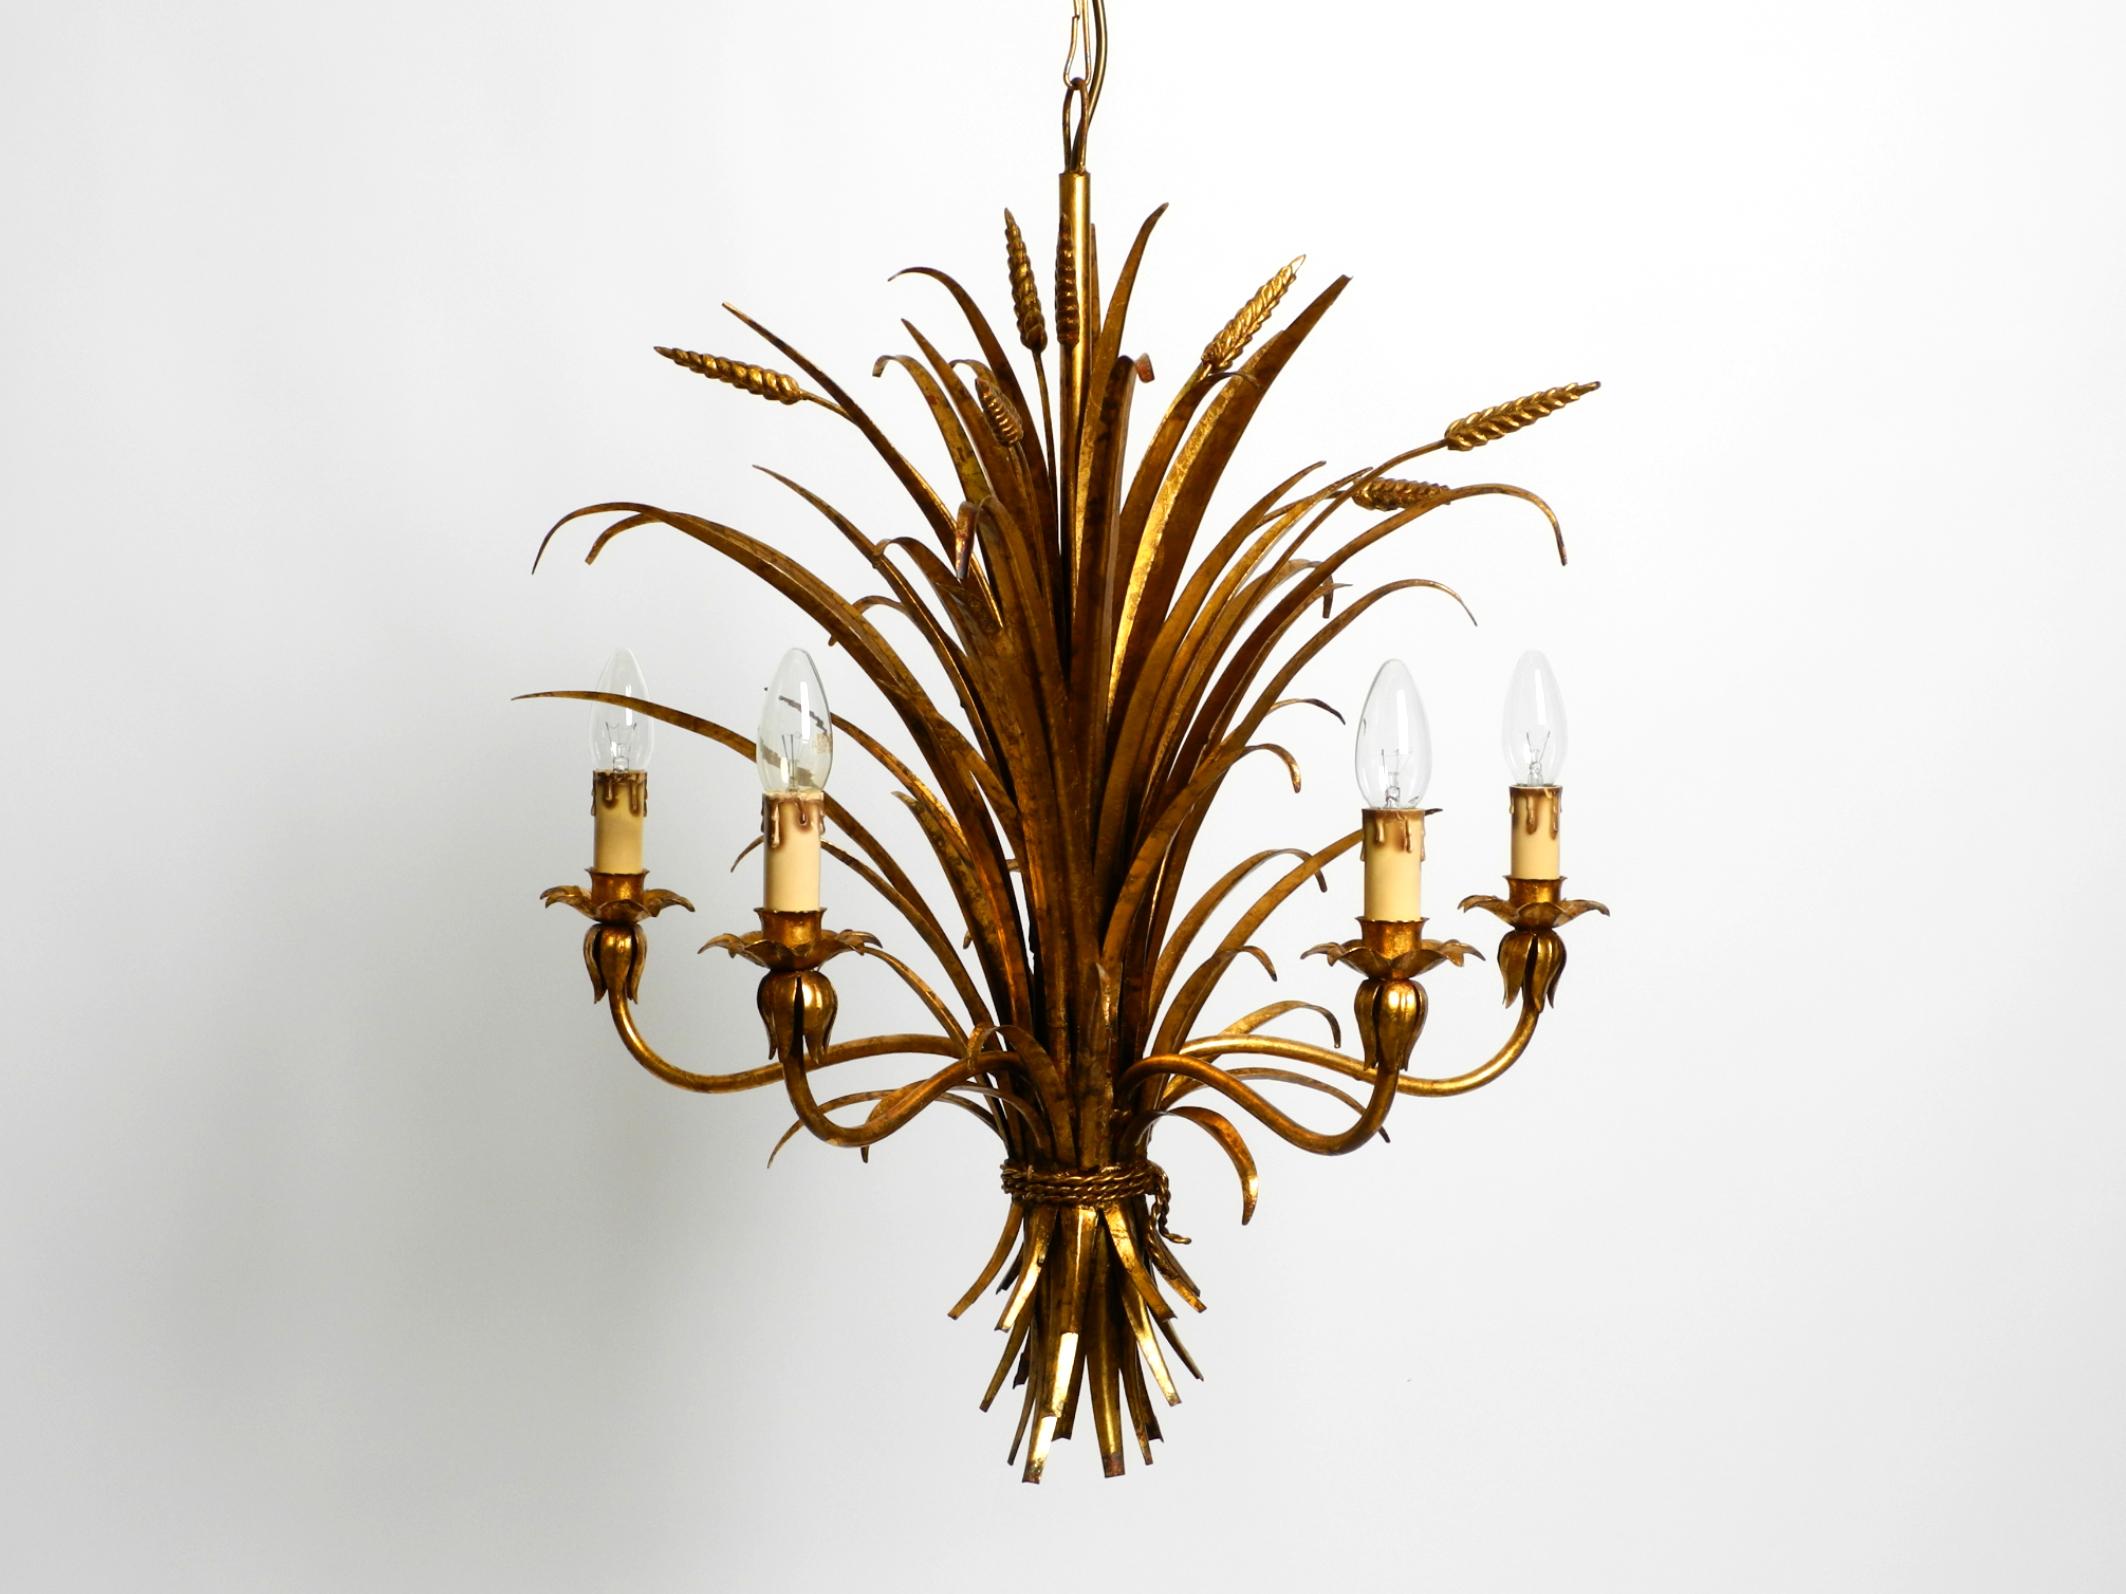 Schöner 5-armiger, vergoldeter, hoher Metalllüster von Hans Kögl aus den 1970er Jahren.
Hans Kögl war ein berühmter Leuchten- und Tischdesigner. Er arbeitete mit natürlichen Formen wie Palmenblättern und anderen Pflanzenformen. Seine Entwürfe wurden